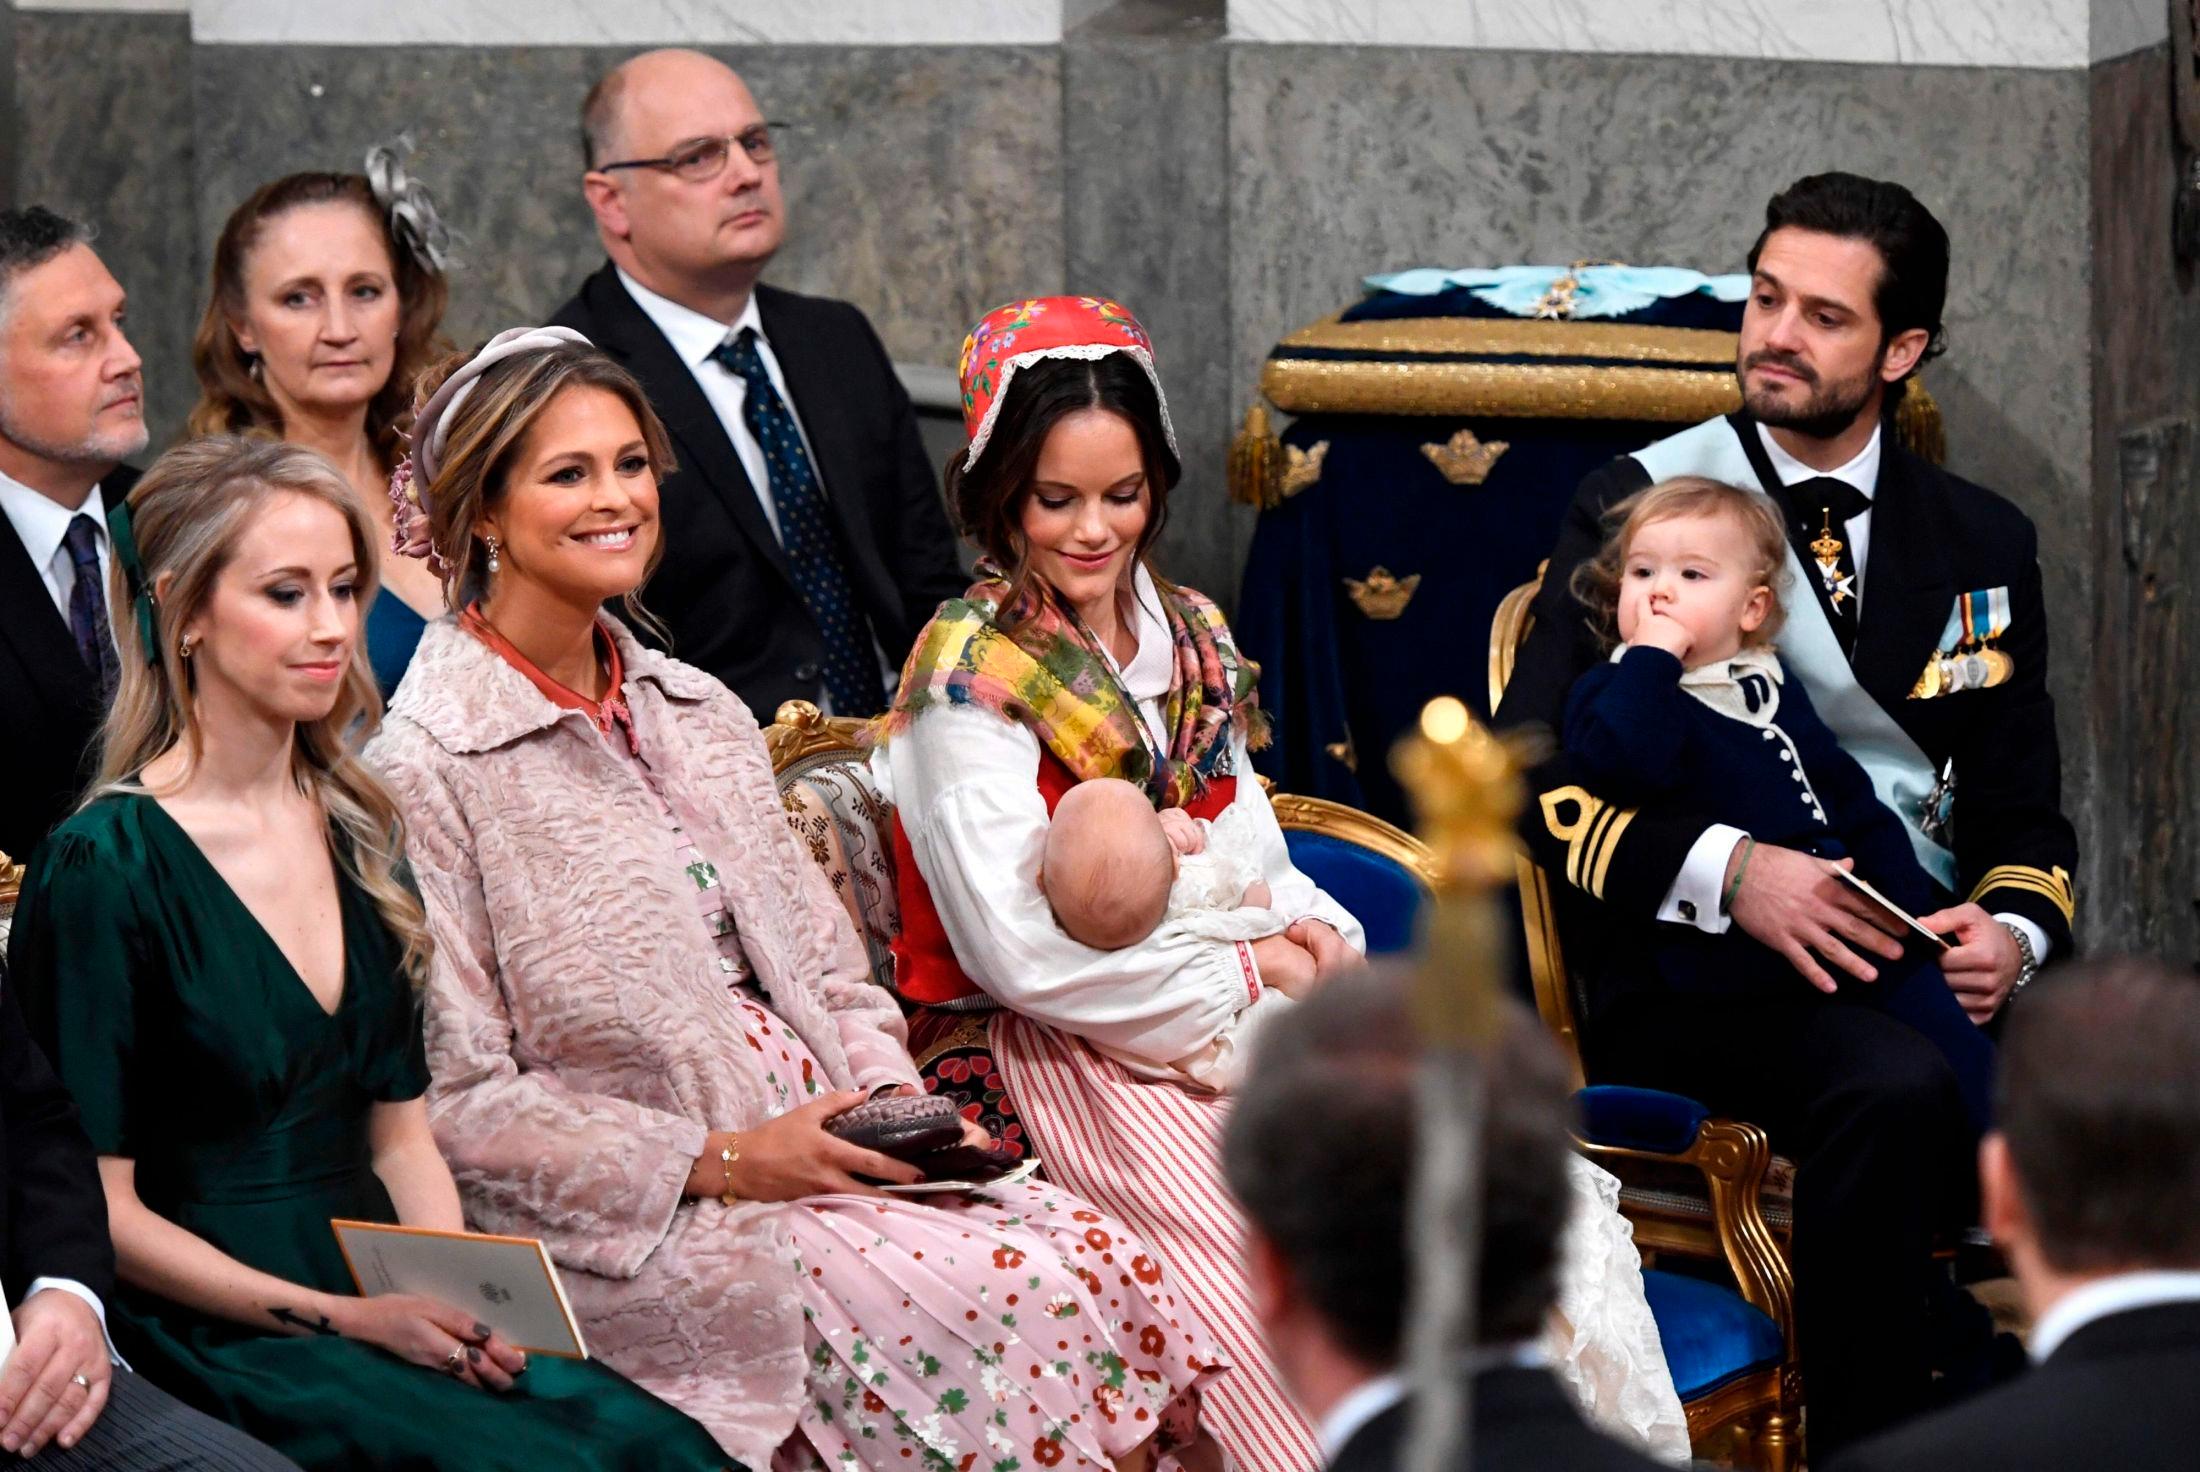 I KIRKEN: Fra venstre: Sara Hellqvist (prinsesse Sofias søster), prinsesse Madeleine, prinsesse Sofia med prins Gabriel og prins Carl Philip med prins Alexander. Foto: Anders Wiklund/TT/AFP